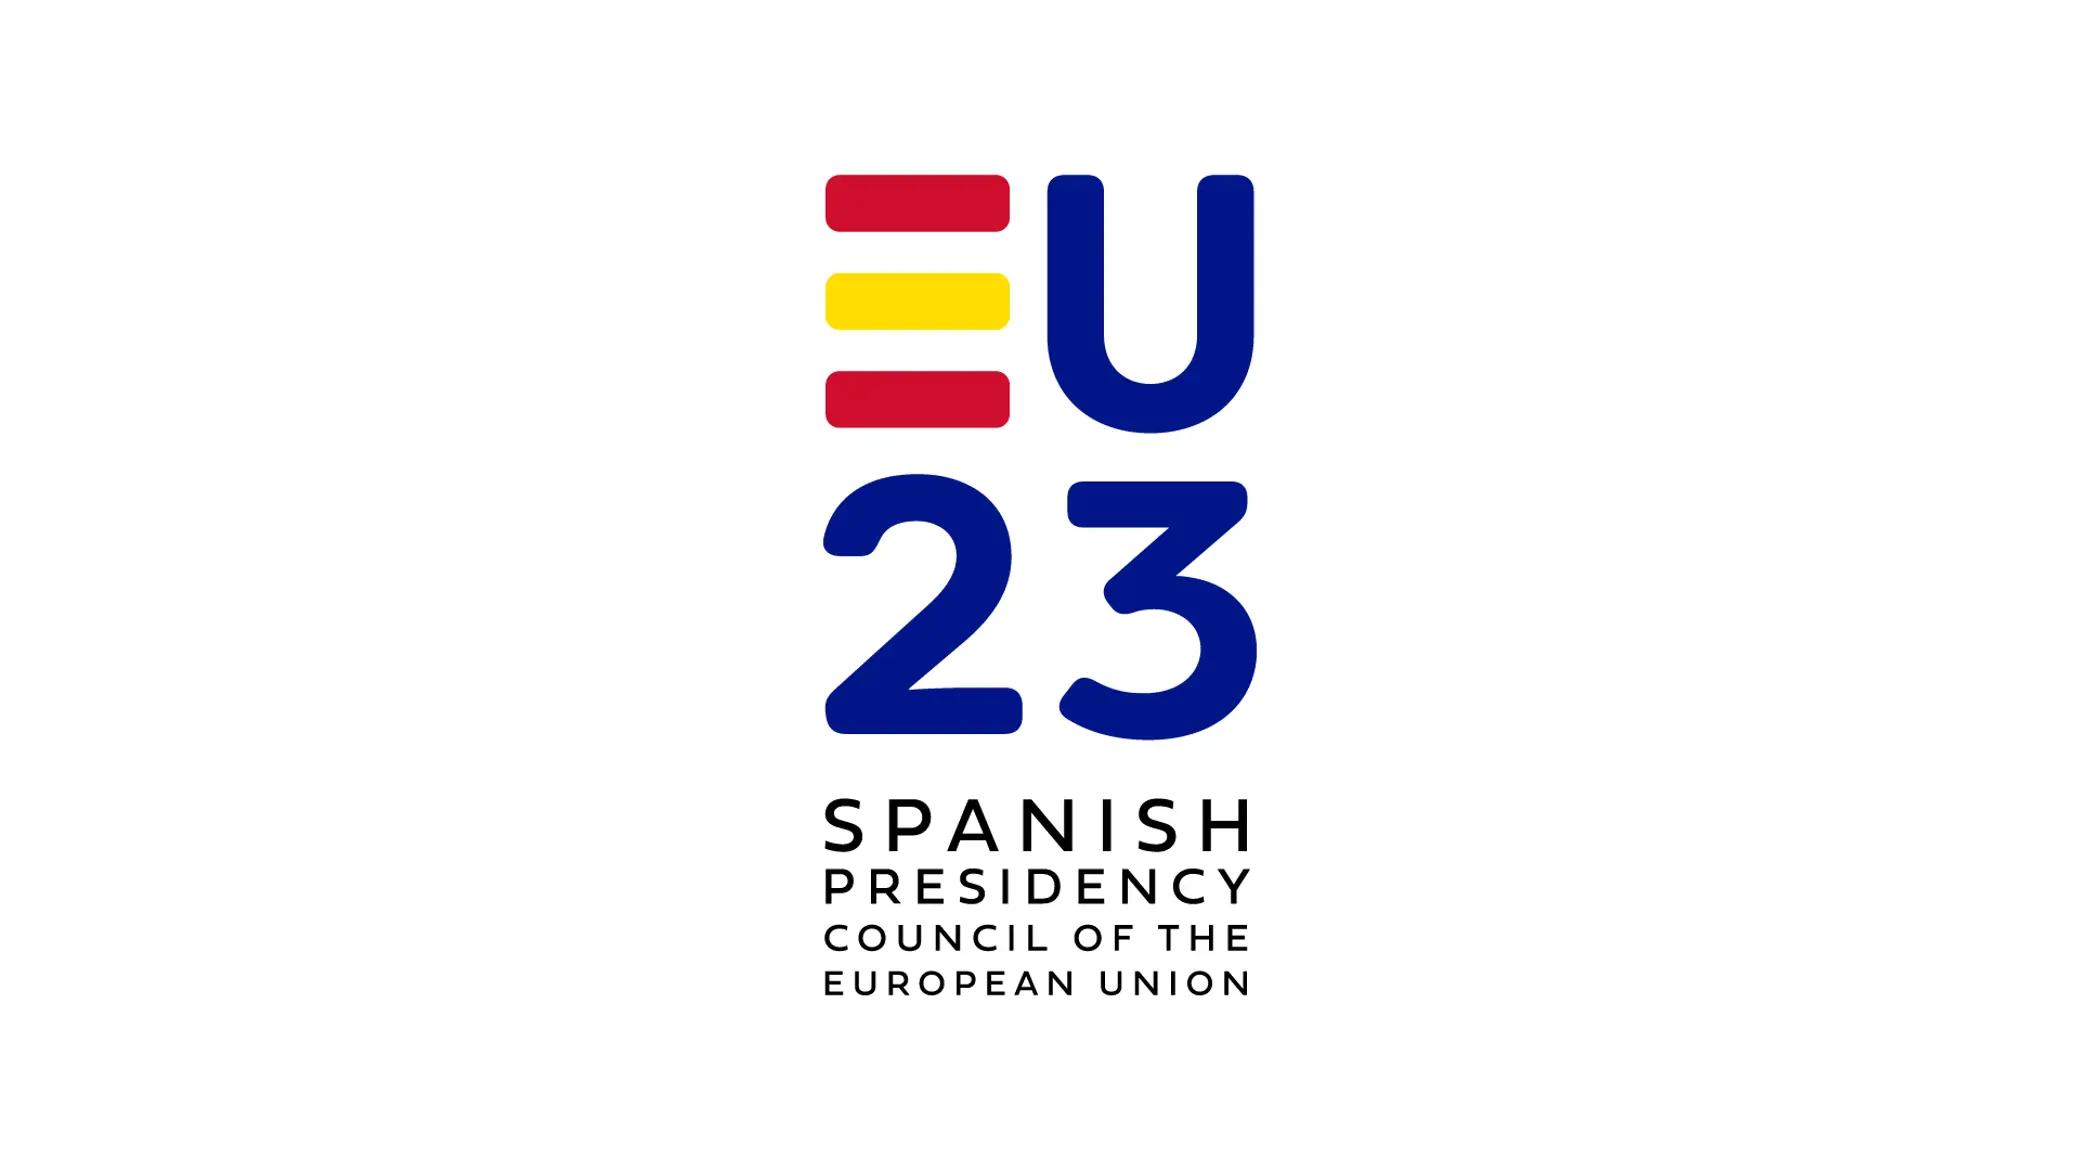 Přečtete si více ze článku Začíná španělské předsednictví v Radě EU